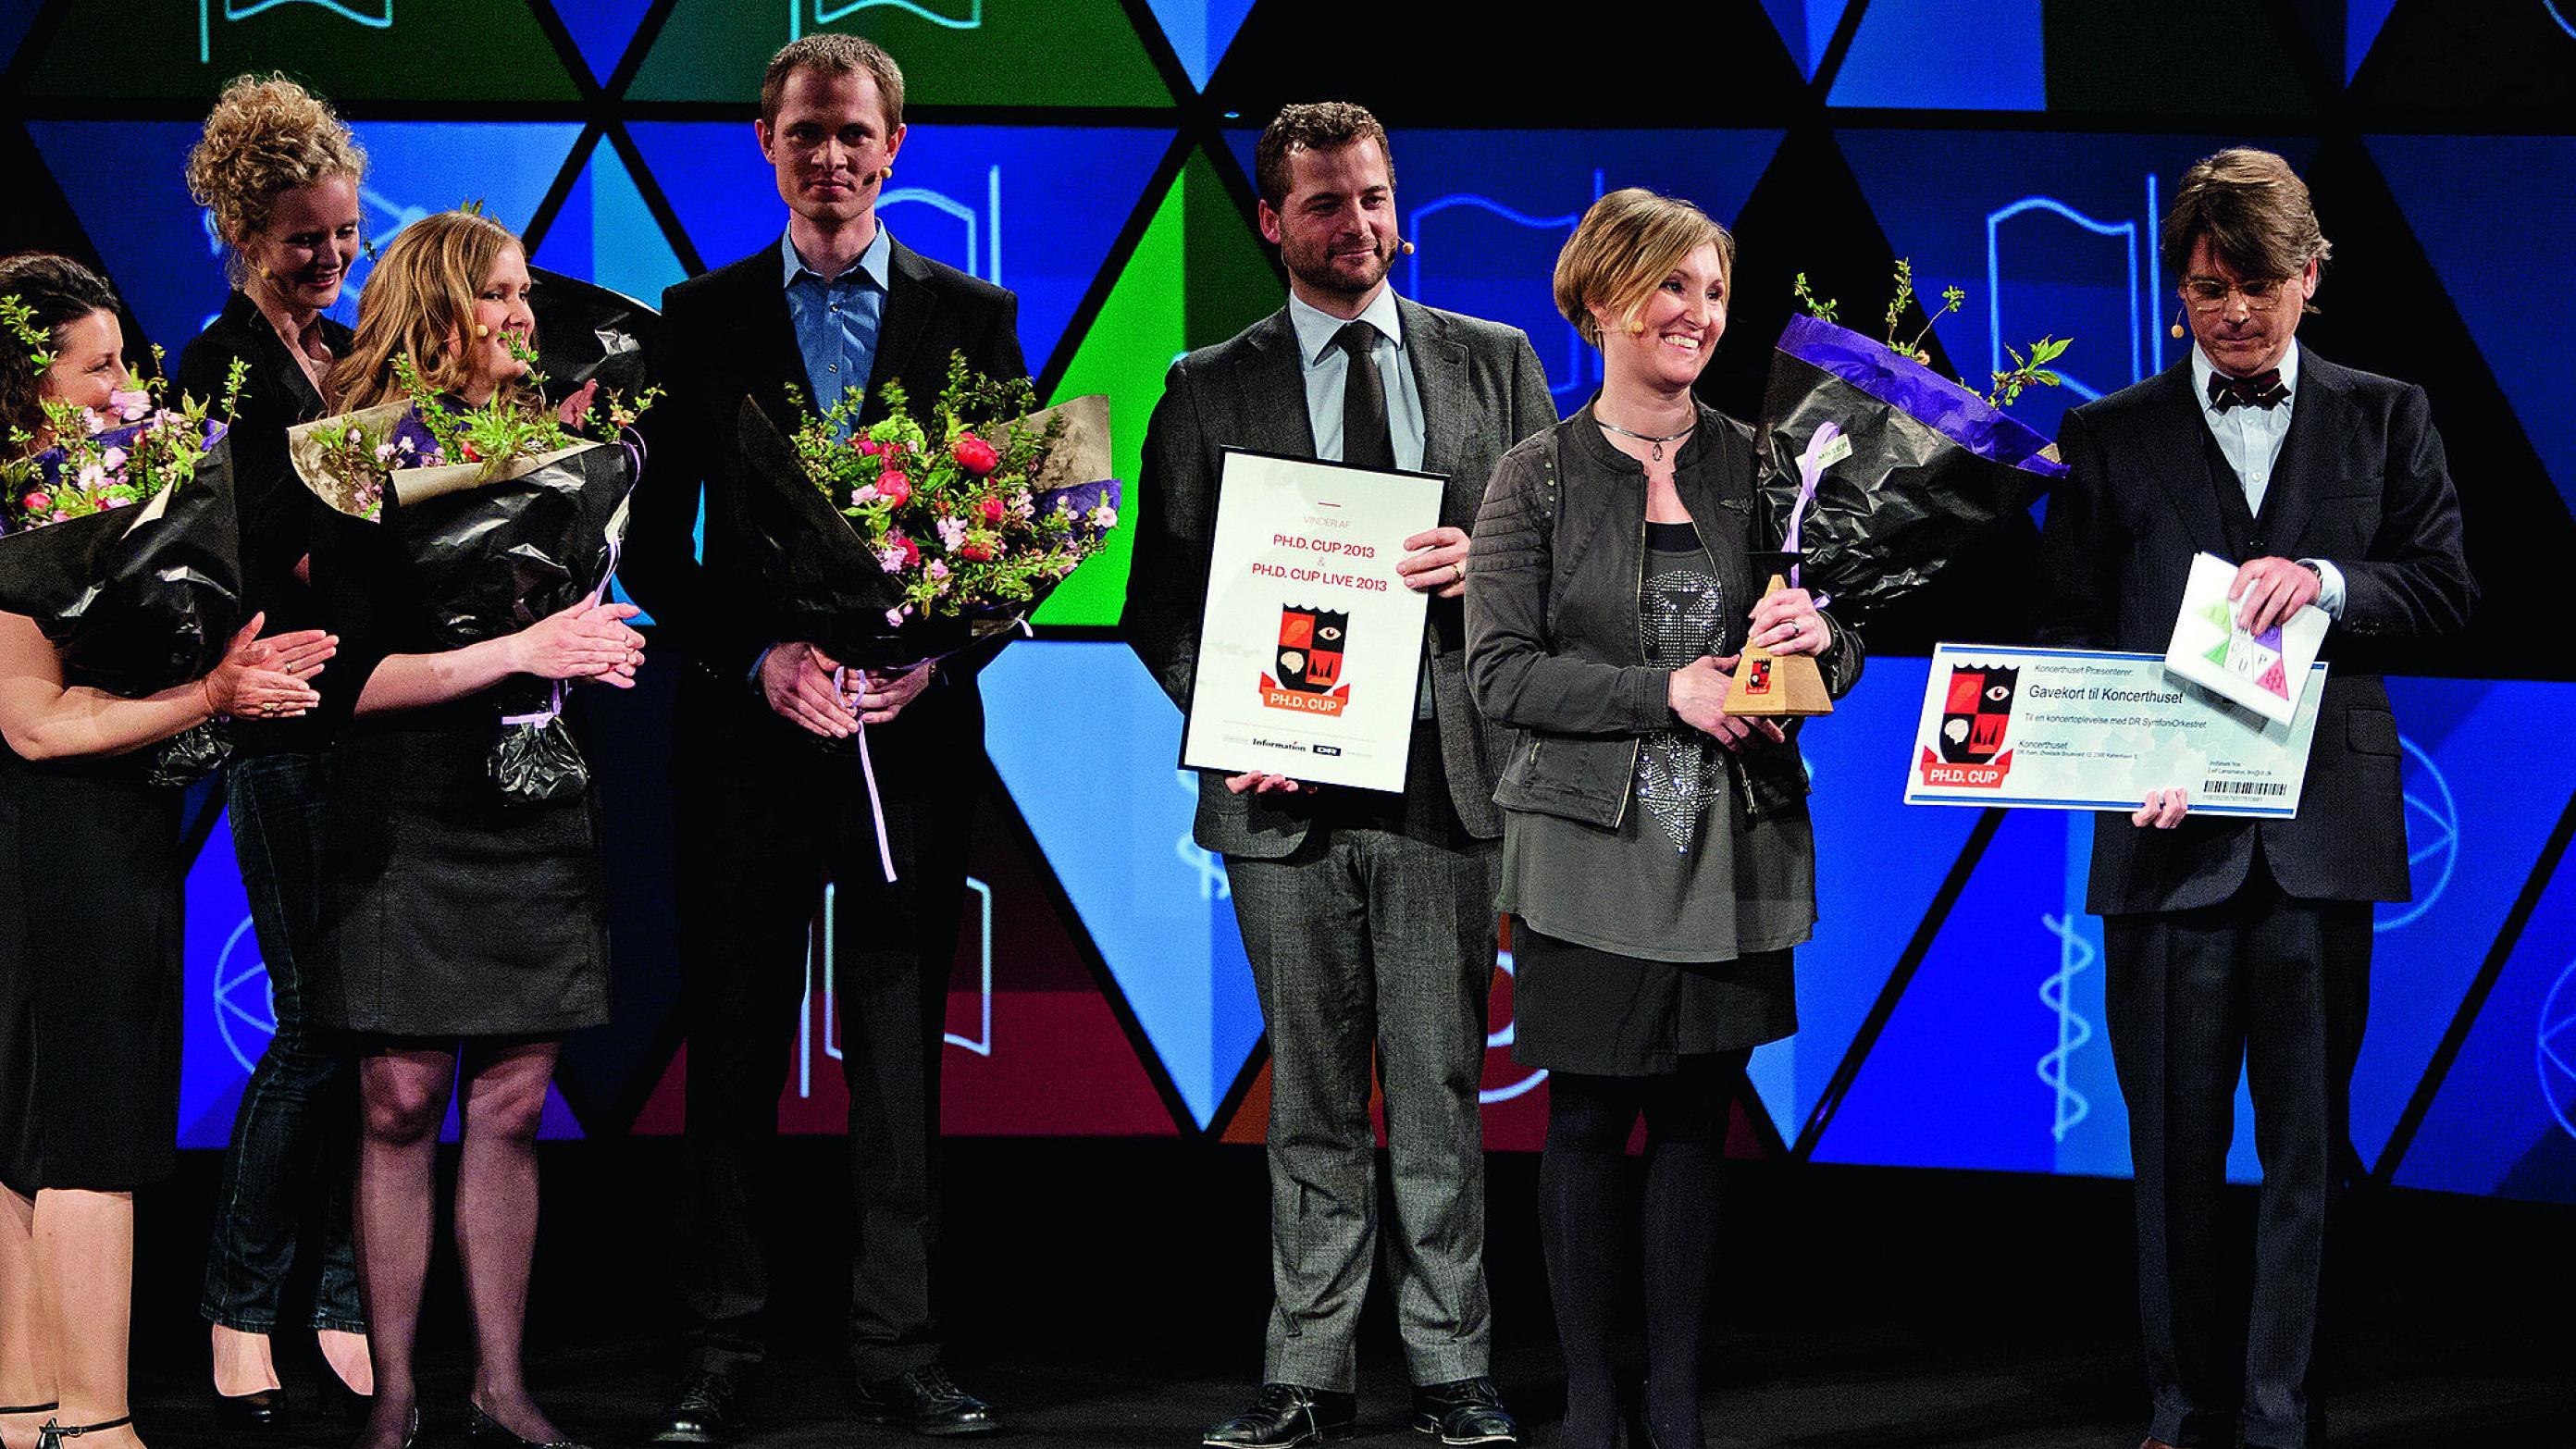 Hjernemesterskab. Med Peter Lund Madsen som konferencier hyldedes vinderne af ph.d.-cup 2013 ved et kåringsshow i maj i DR’s koncerthus. Foto: DR/Agnete Schlichtkrull.